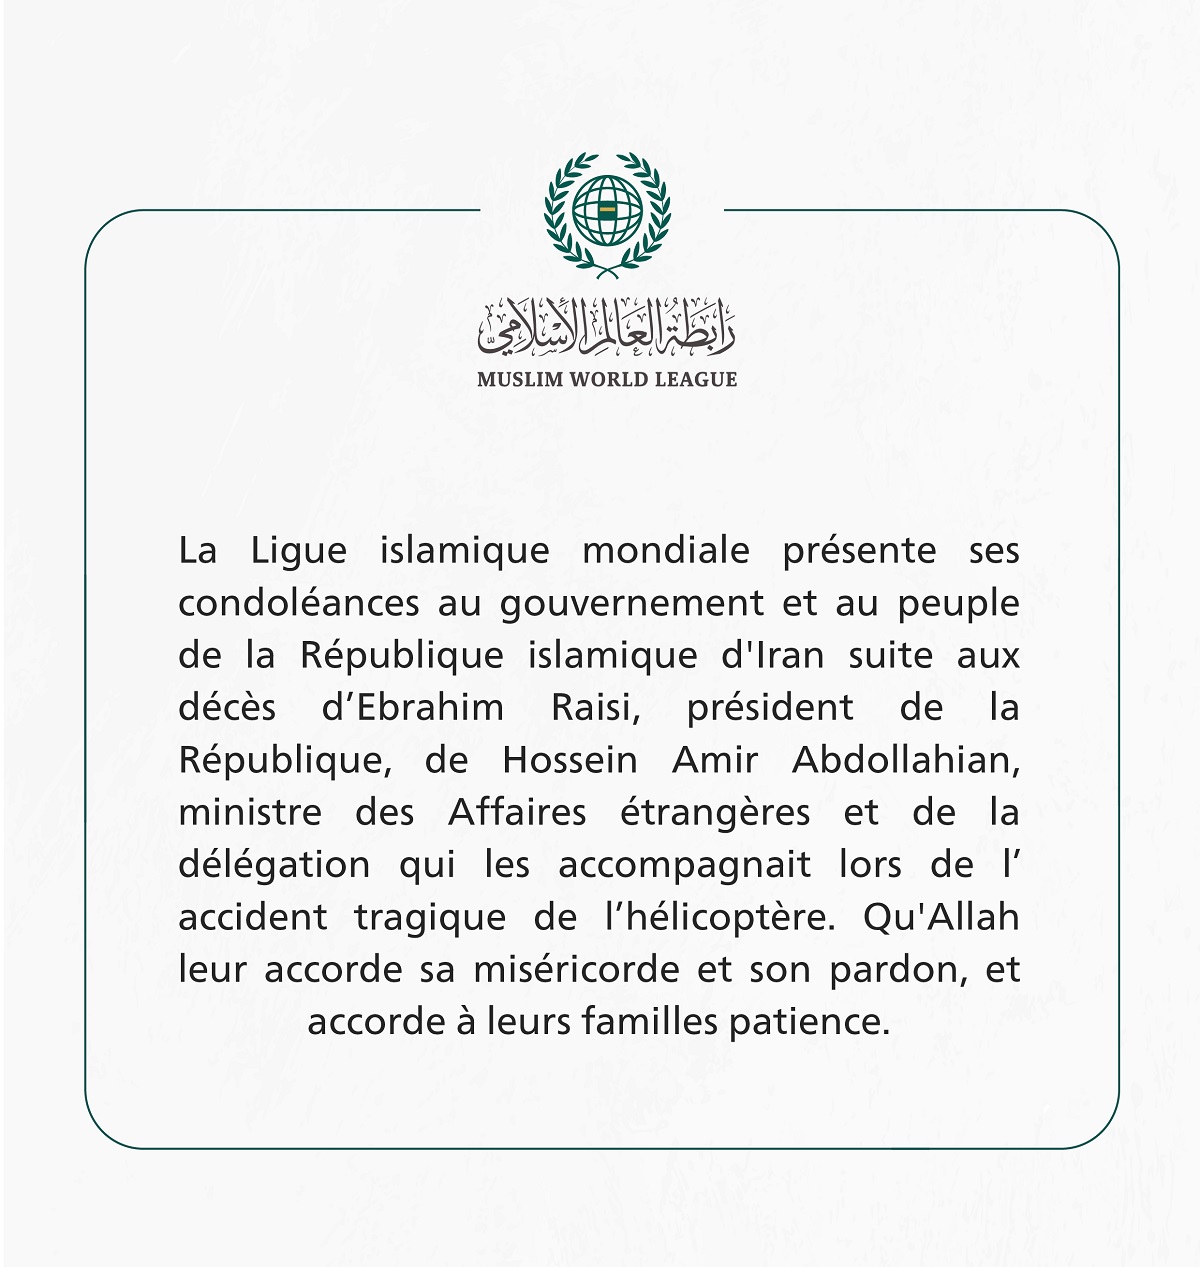 Condoléances de la Ligueislamiquemondiale à la République islamique d’Iran suite au décès du Président Ebrahimraisi